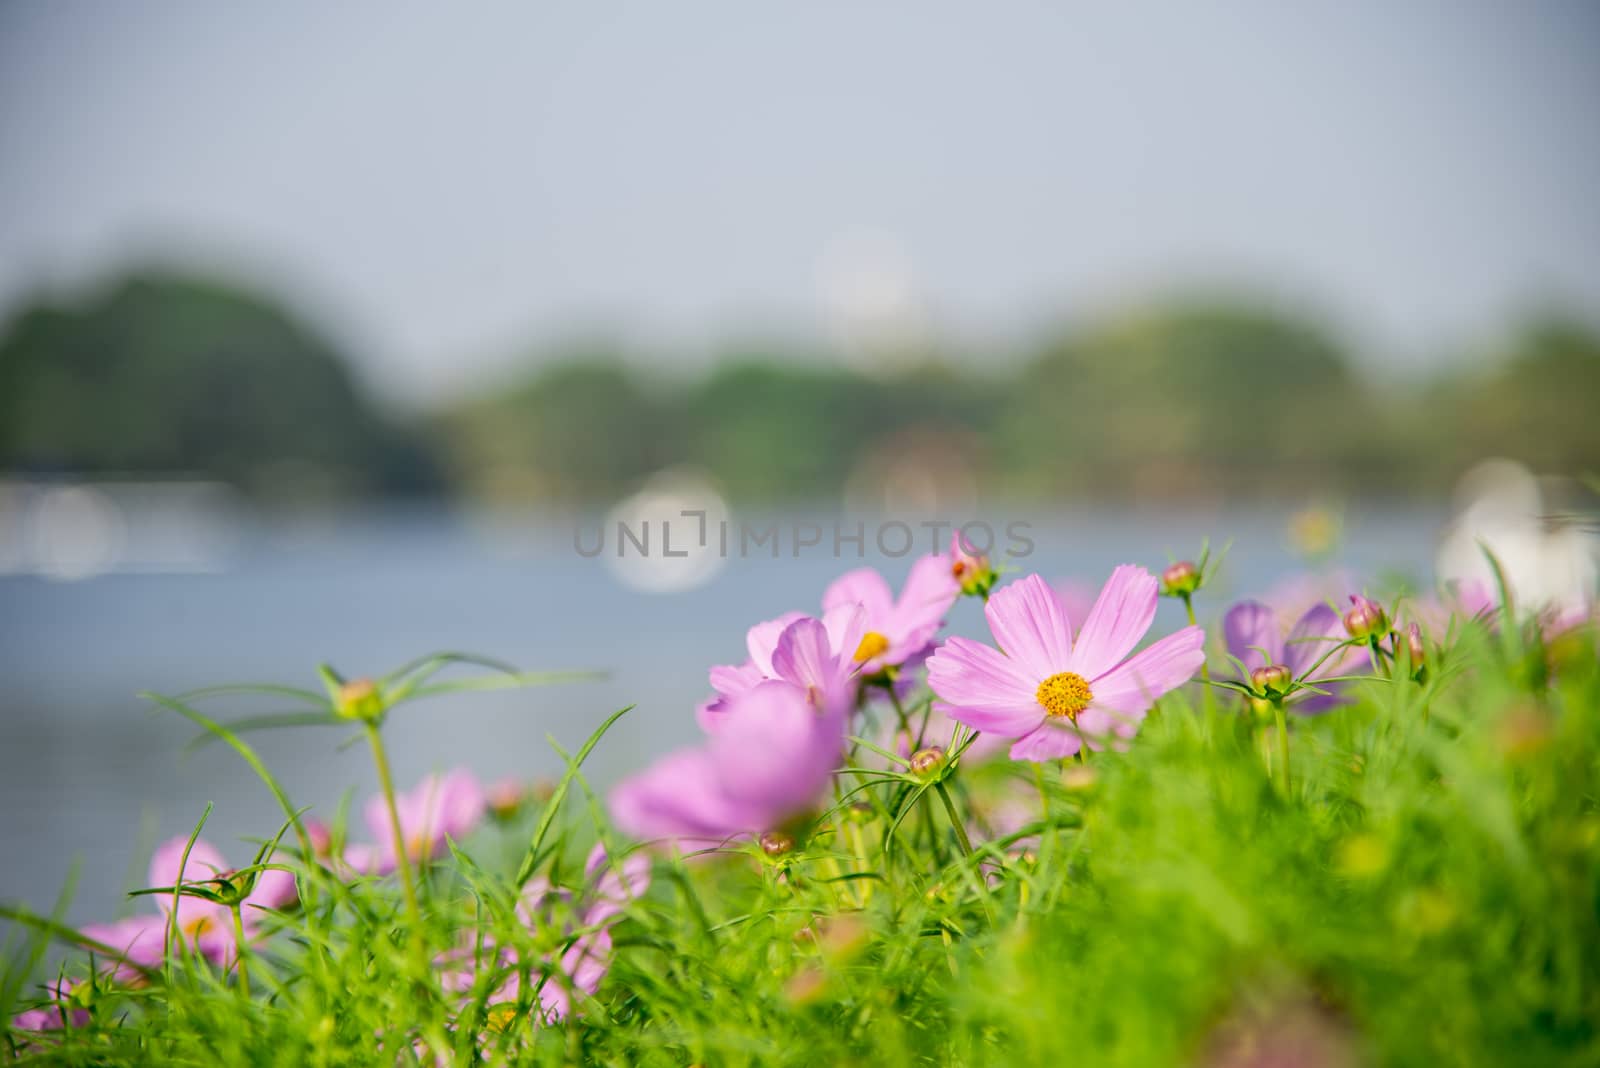 Purple cosmos flower in the park2 by gjeerawut